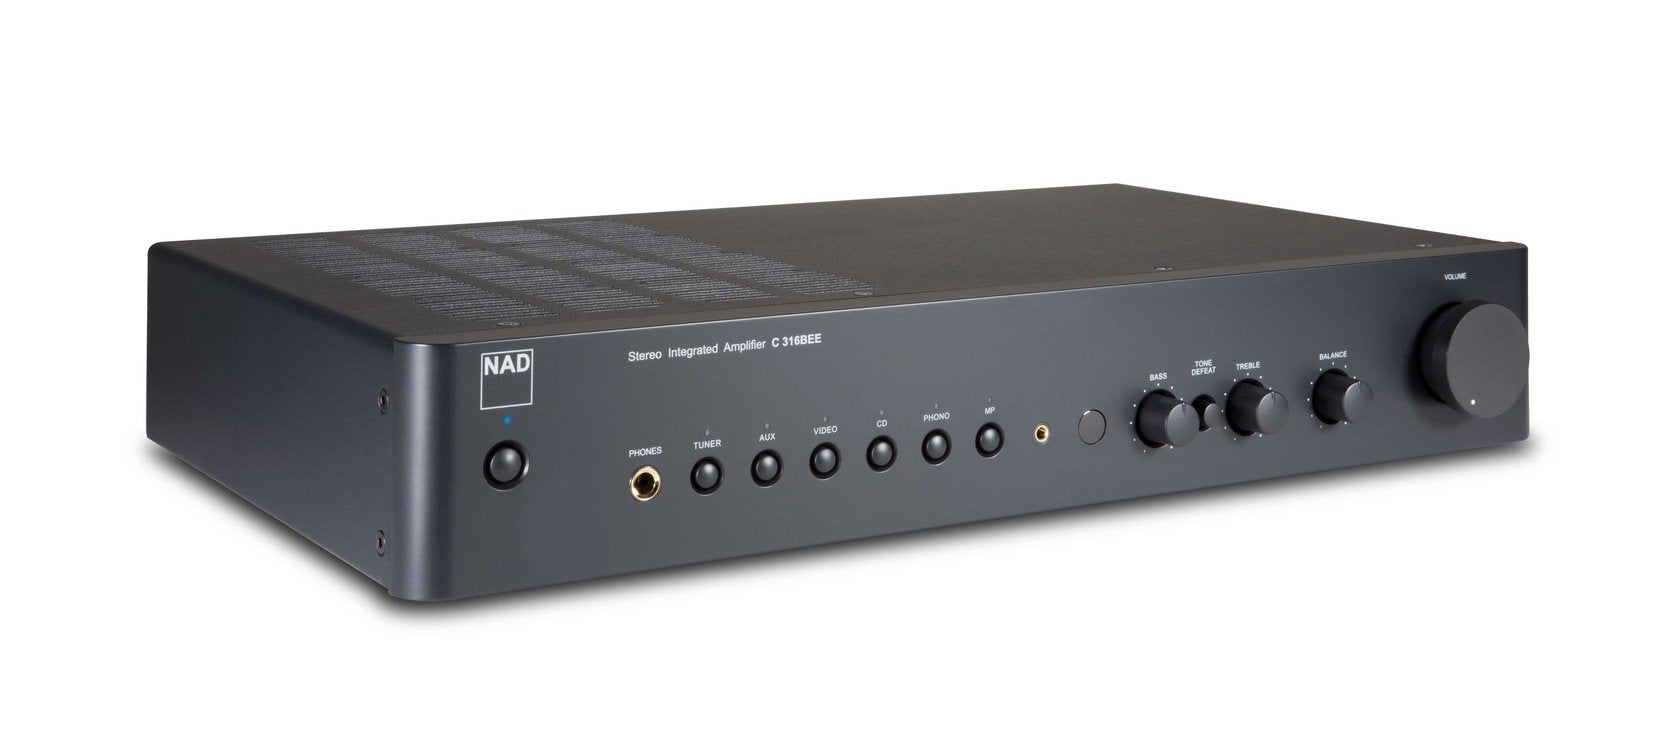 NAD C316 BEE V2 amplifier